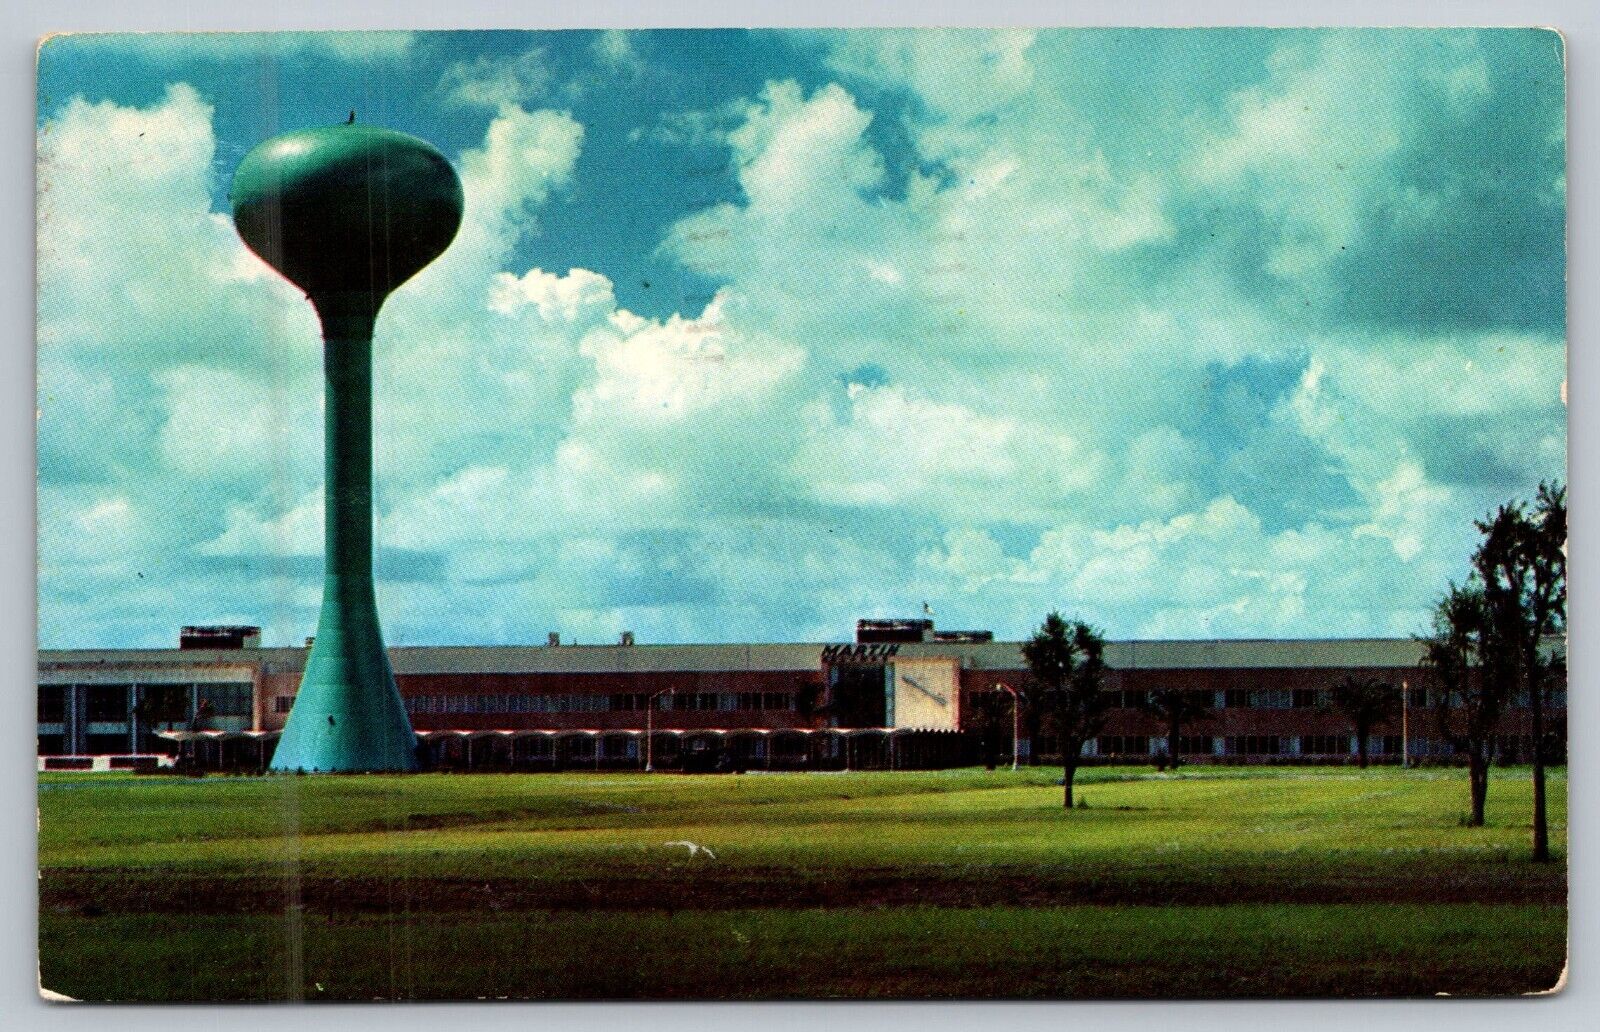 Postcard Home of the Martin Co's. Orlando Division Florida USA